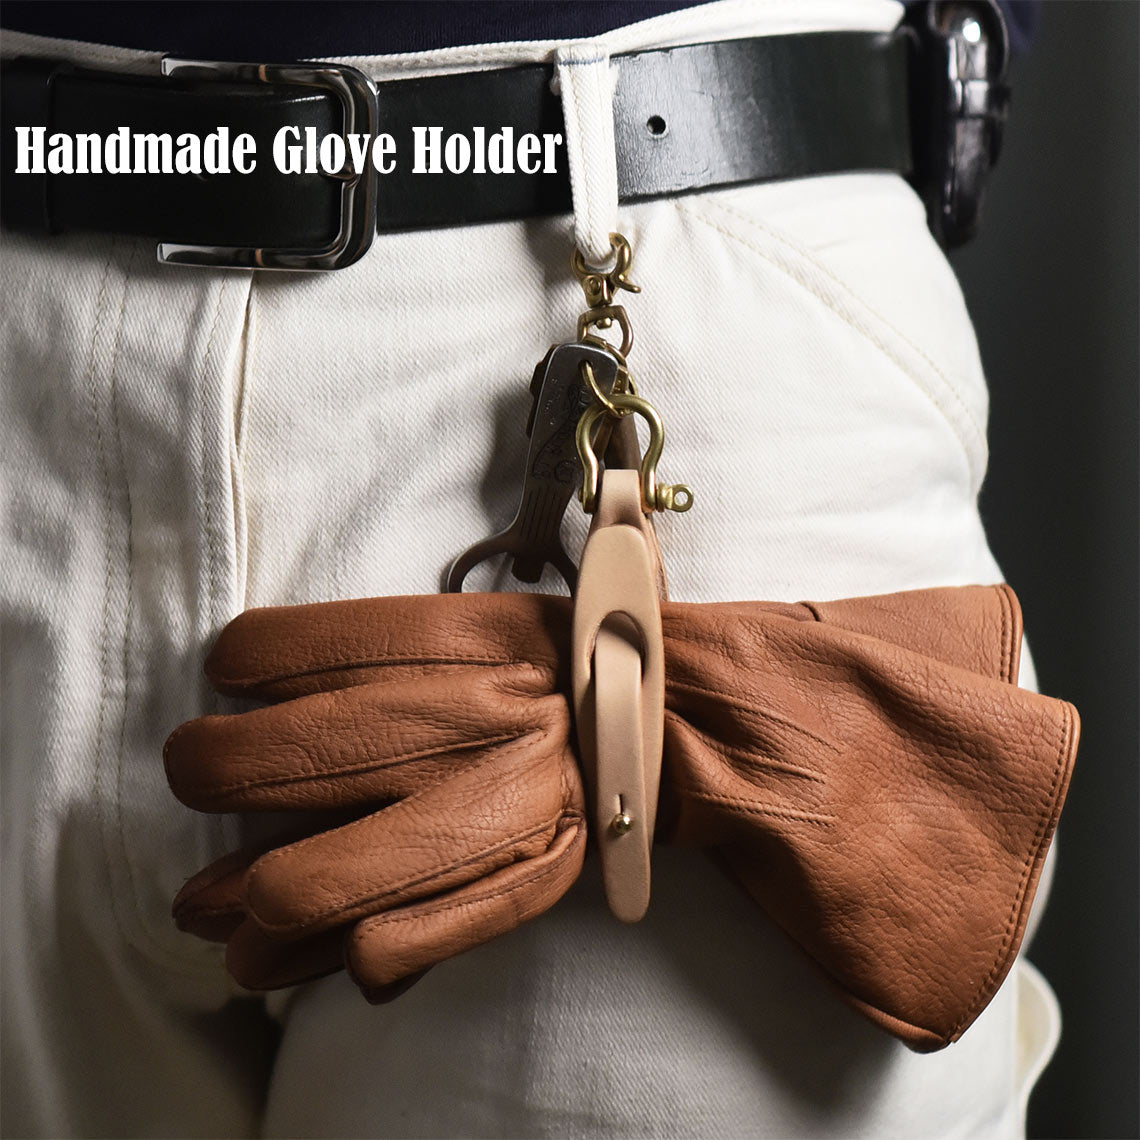 Full Grain Leather Glove Holder | Glove Clip Work Glove Motorcycle Glove Holder